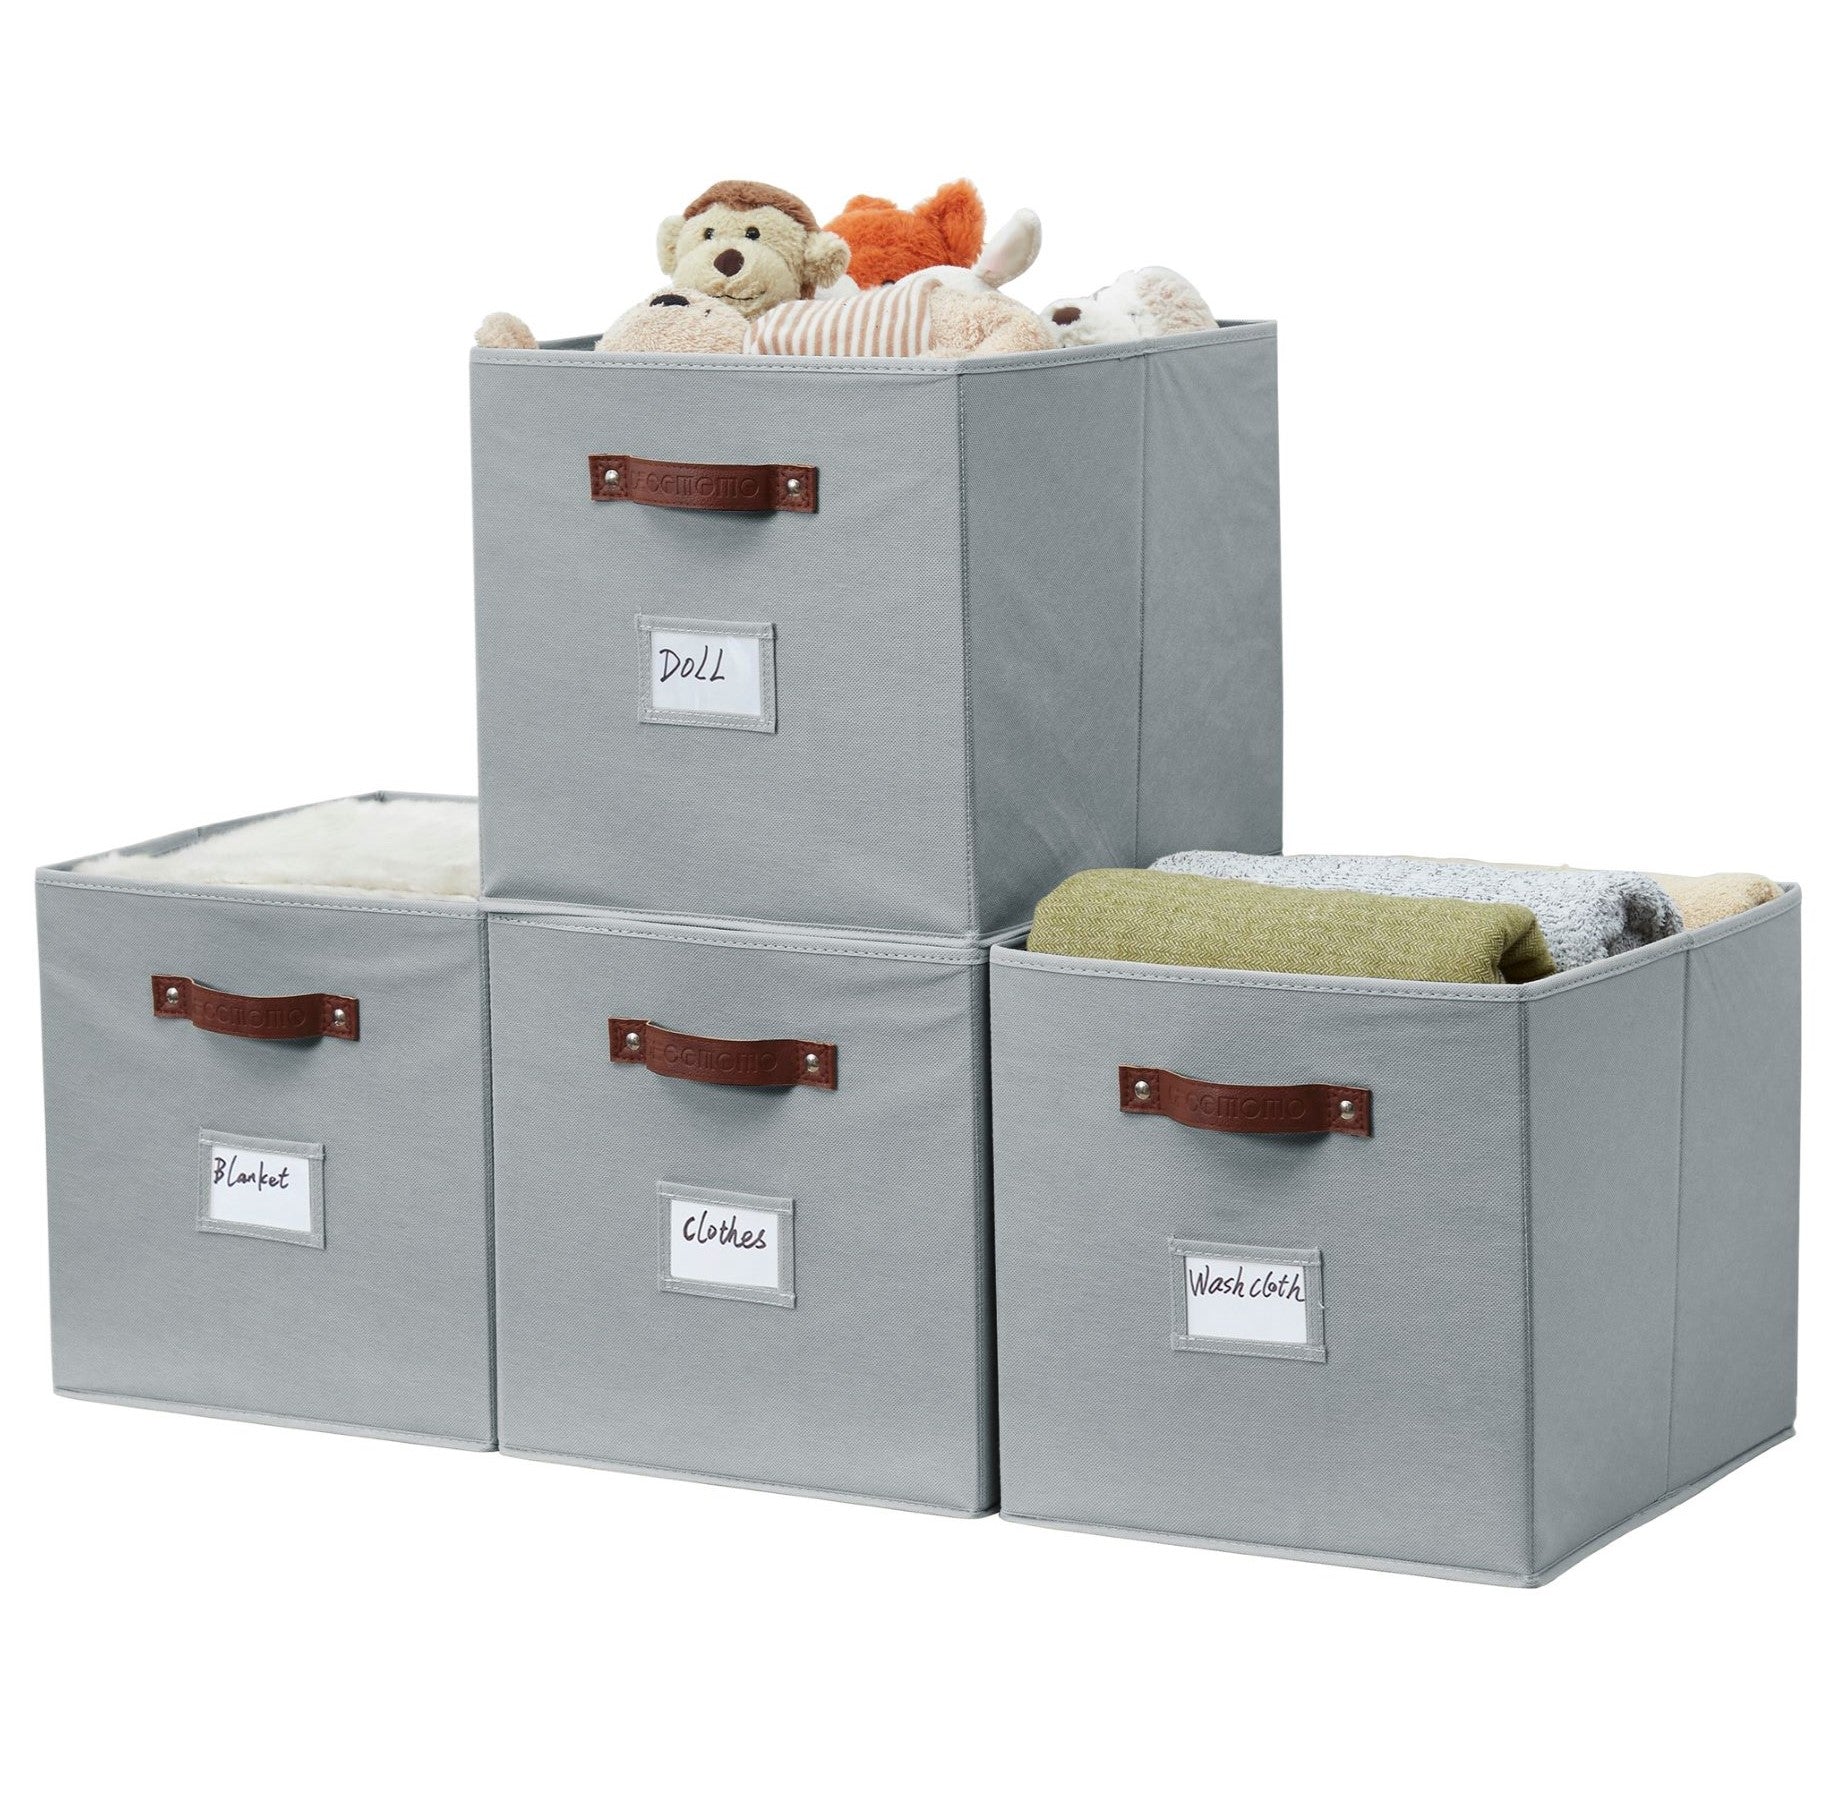 DECOMOMO Cube Storage Organizer Bins 11 inch Cube Storage Bin 4 Pack Cubby  Storage Bins Storage Baskets for Organizing Shelf Closet Nursery Toys Cloth